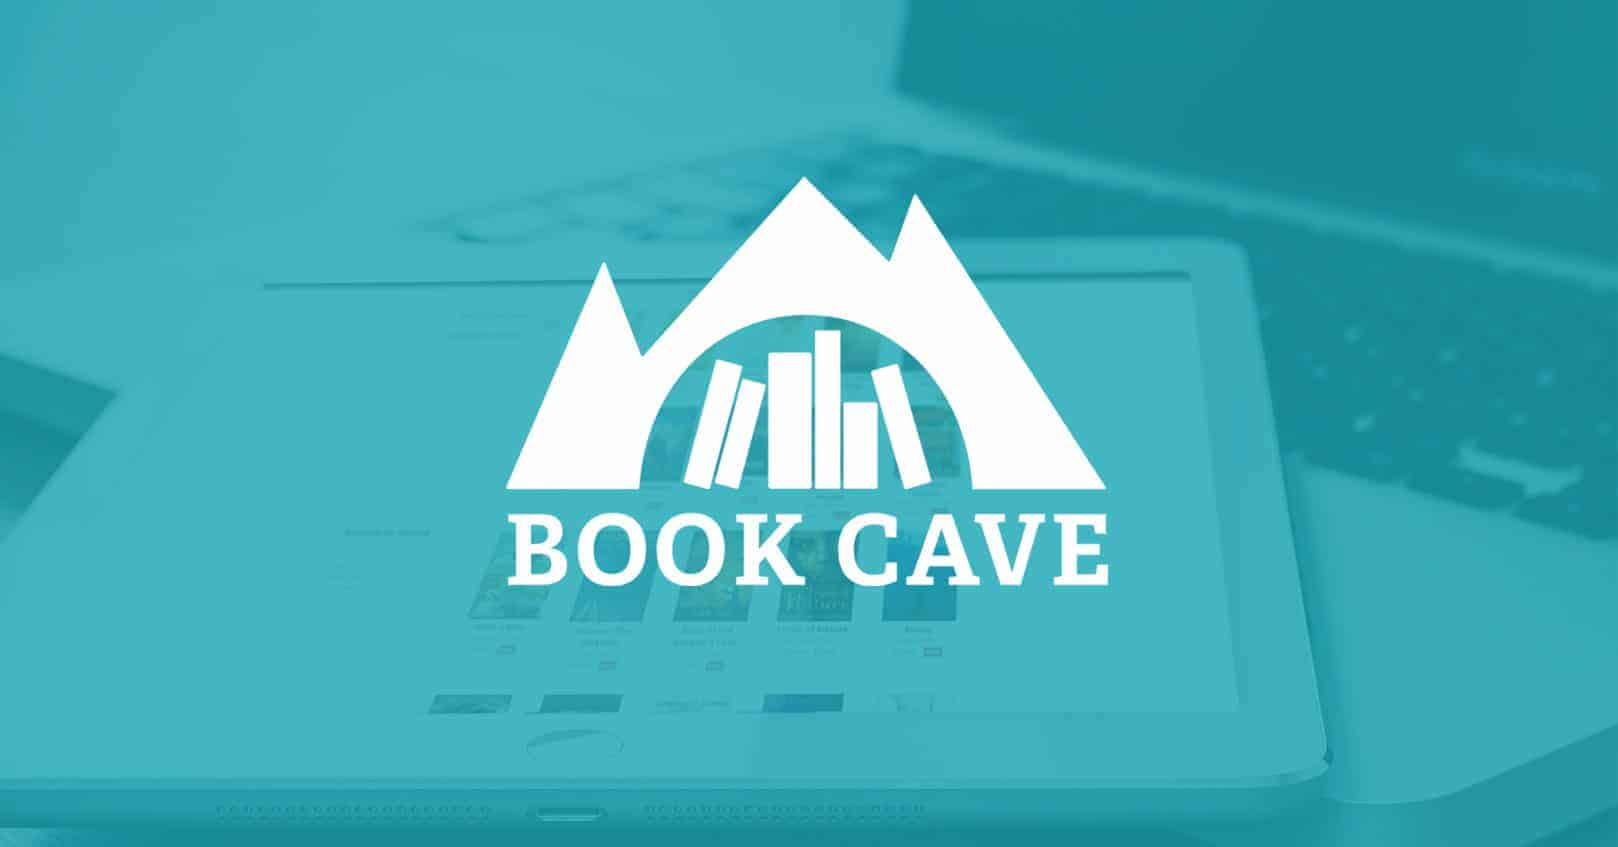 Book Cave Free Ebooks